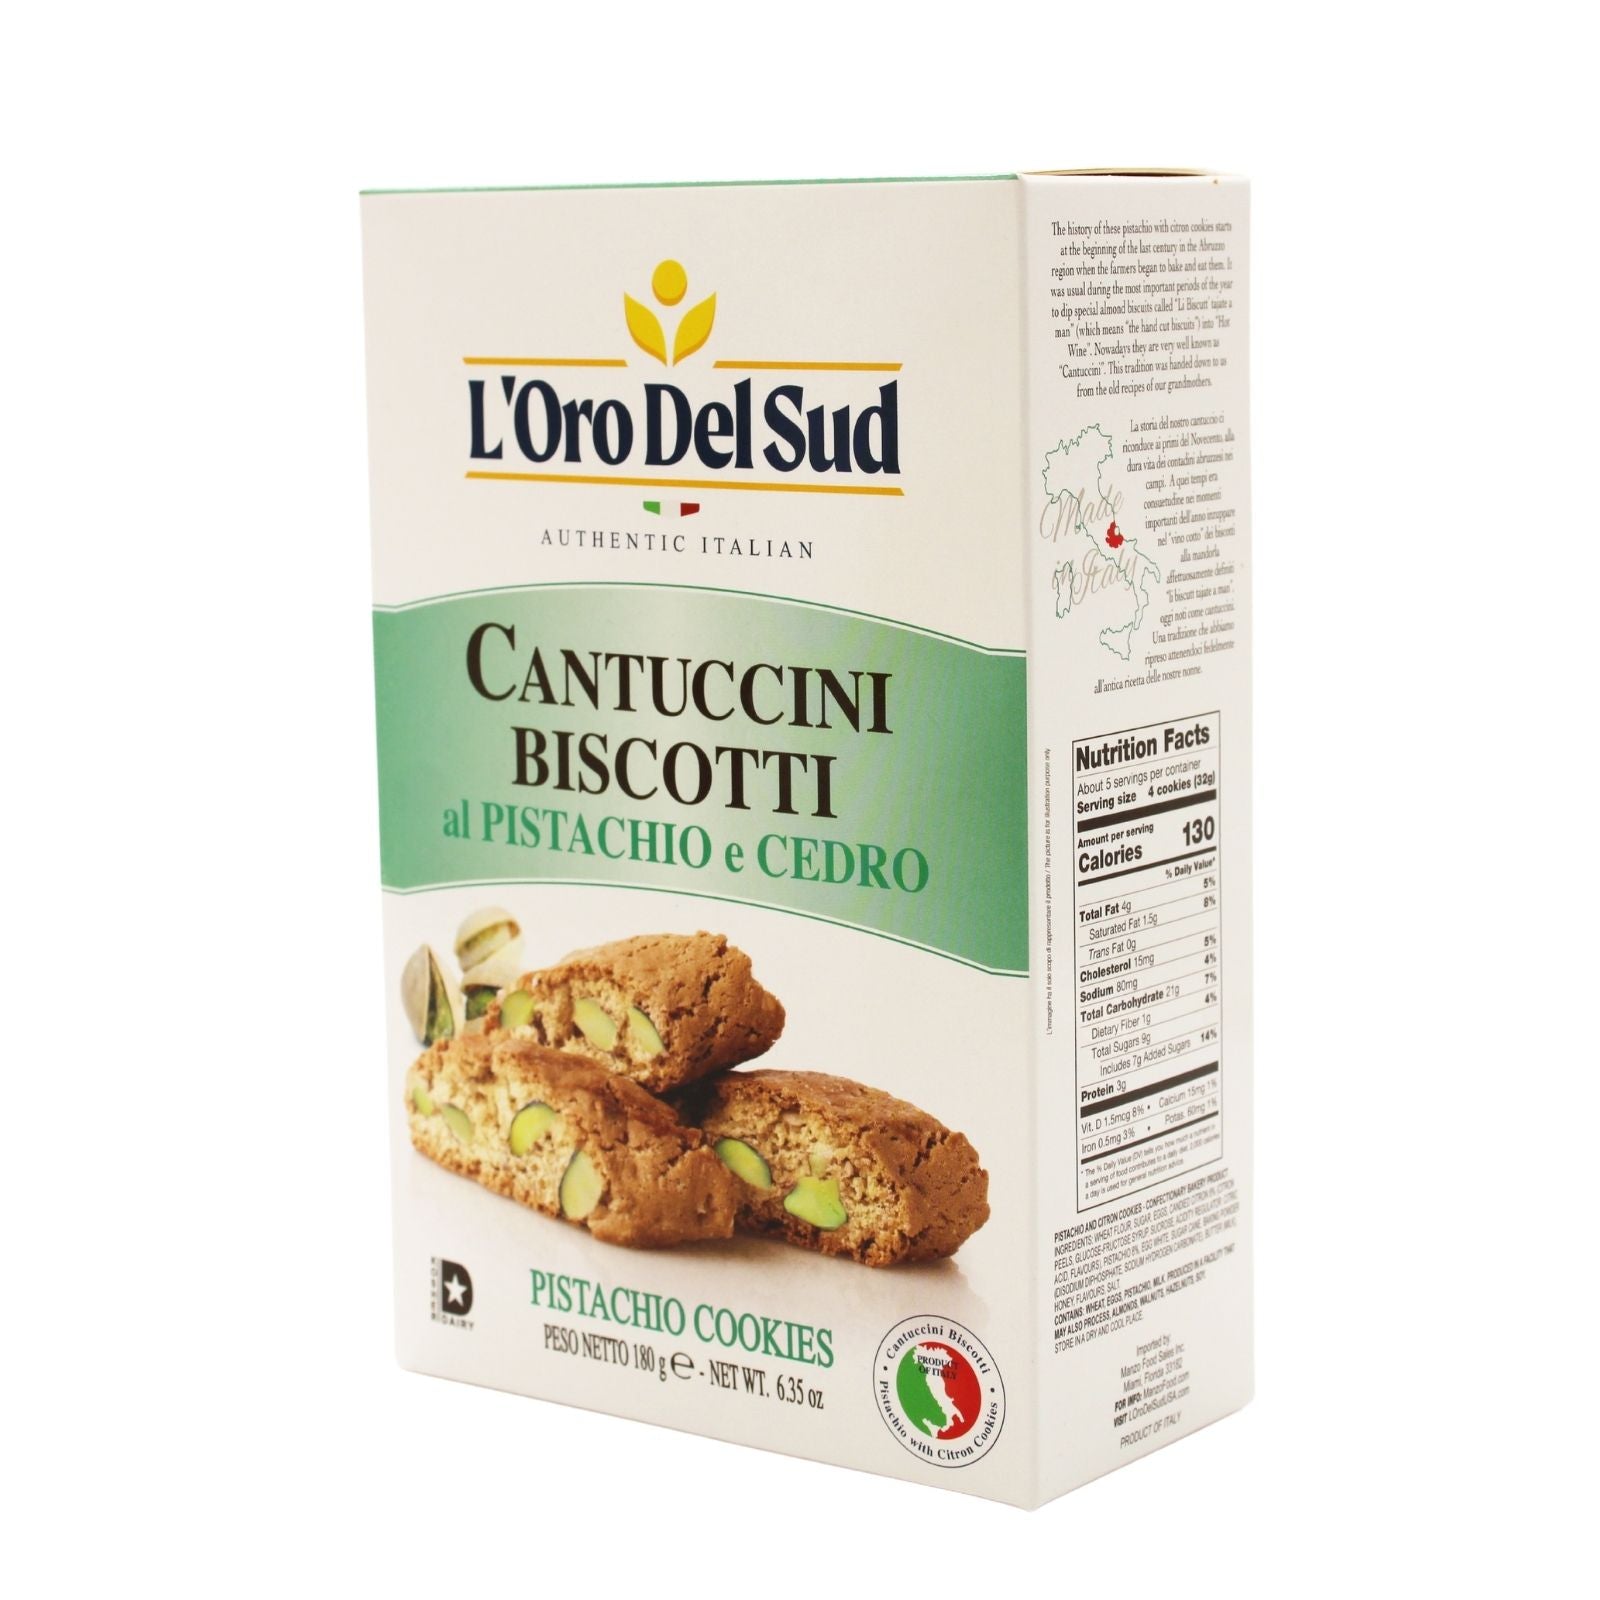 L'Oro Del Sud Cantuccini Biscotti with Pistachio